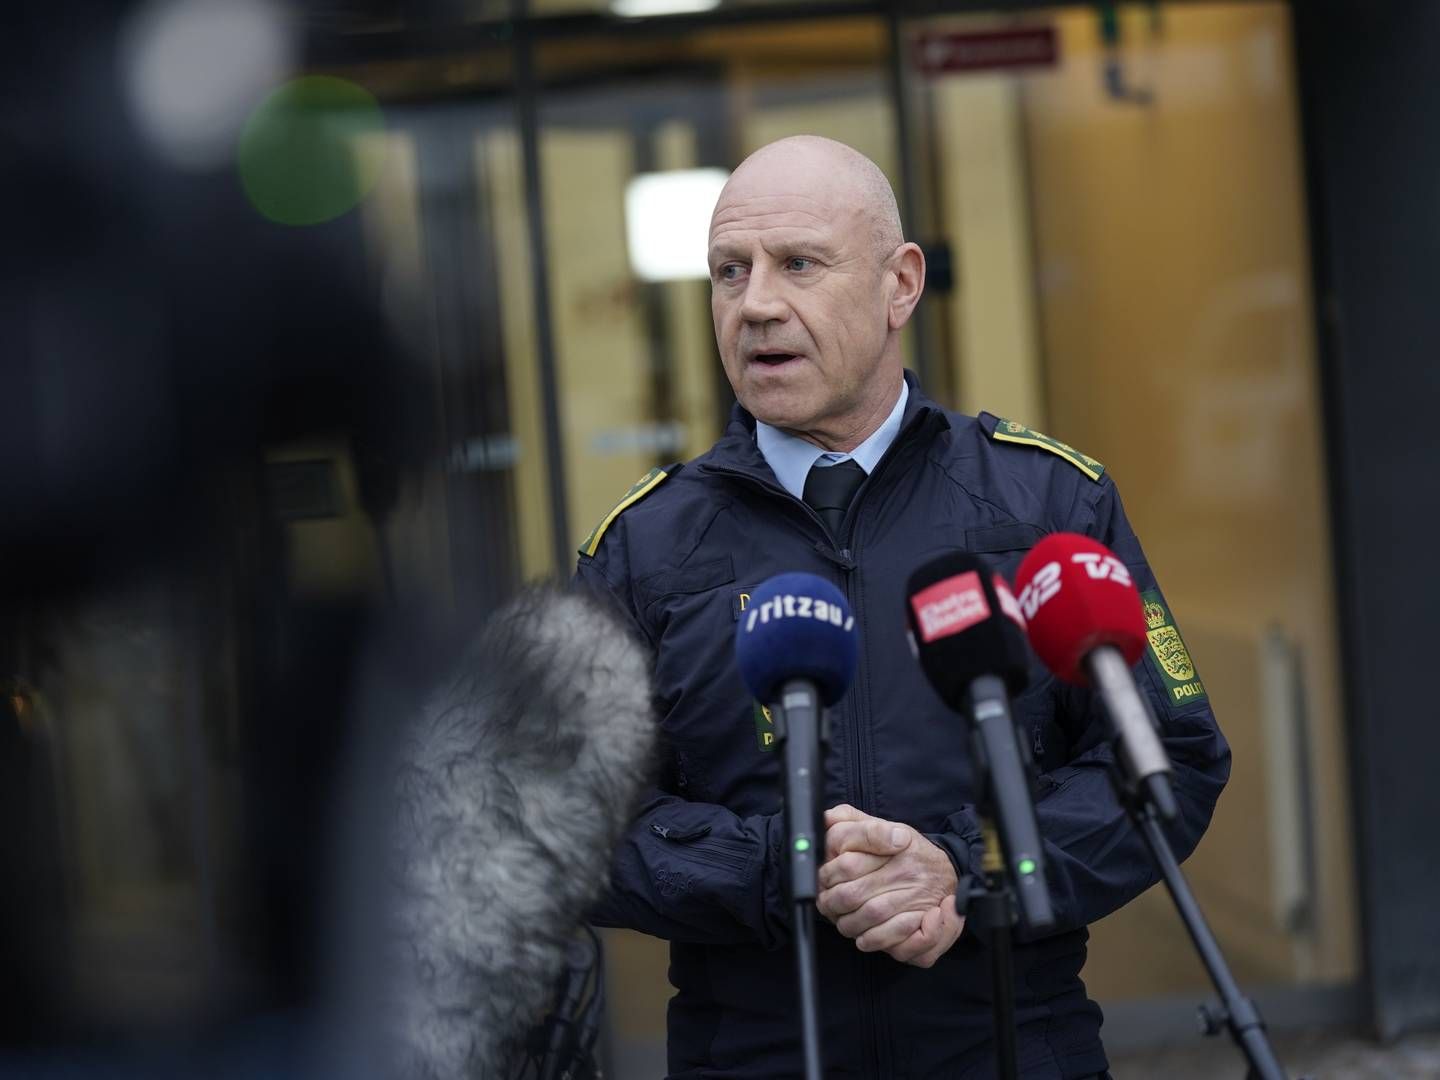 ”Vi har haft mere end 600 politifolk i aktion på tværs af hele Danmark,” siger Torben Svarrer, ledende politiinspektør fra National enhed for Særlig Kriminalitet (NSK)